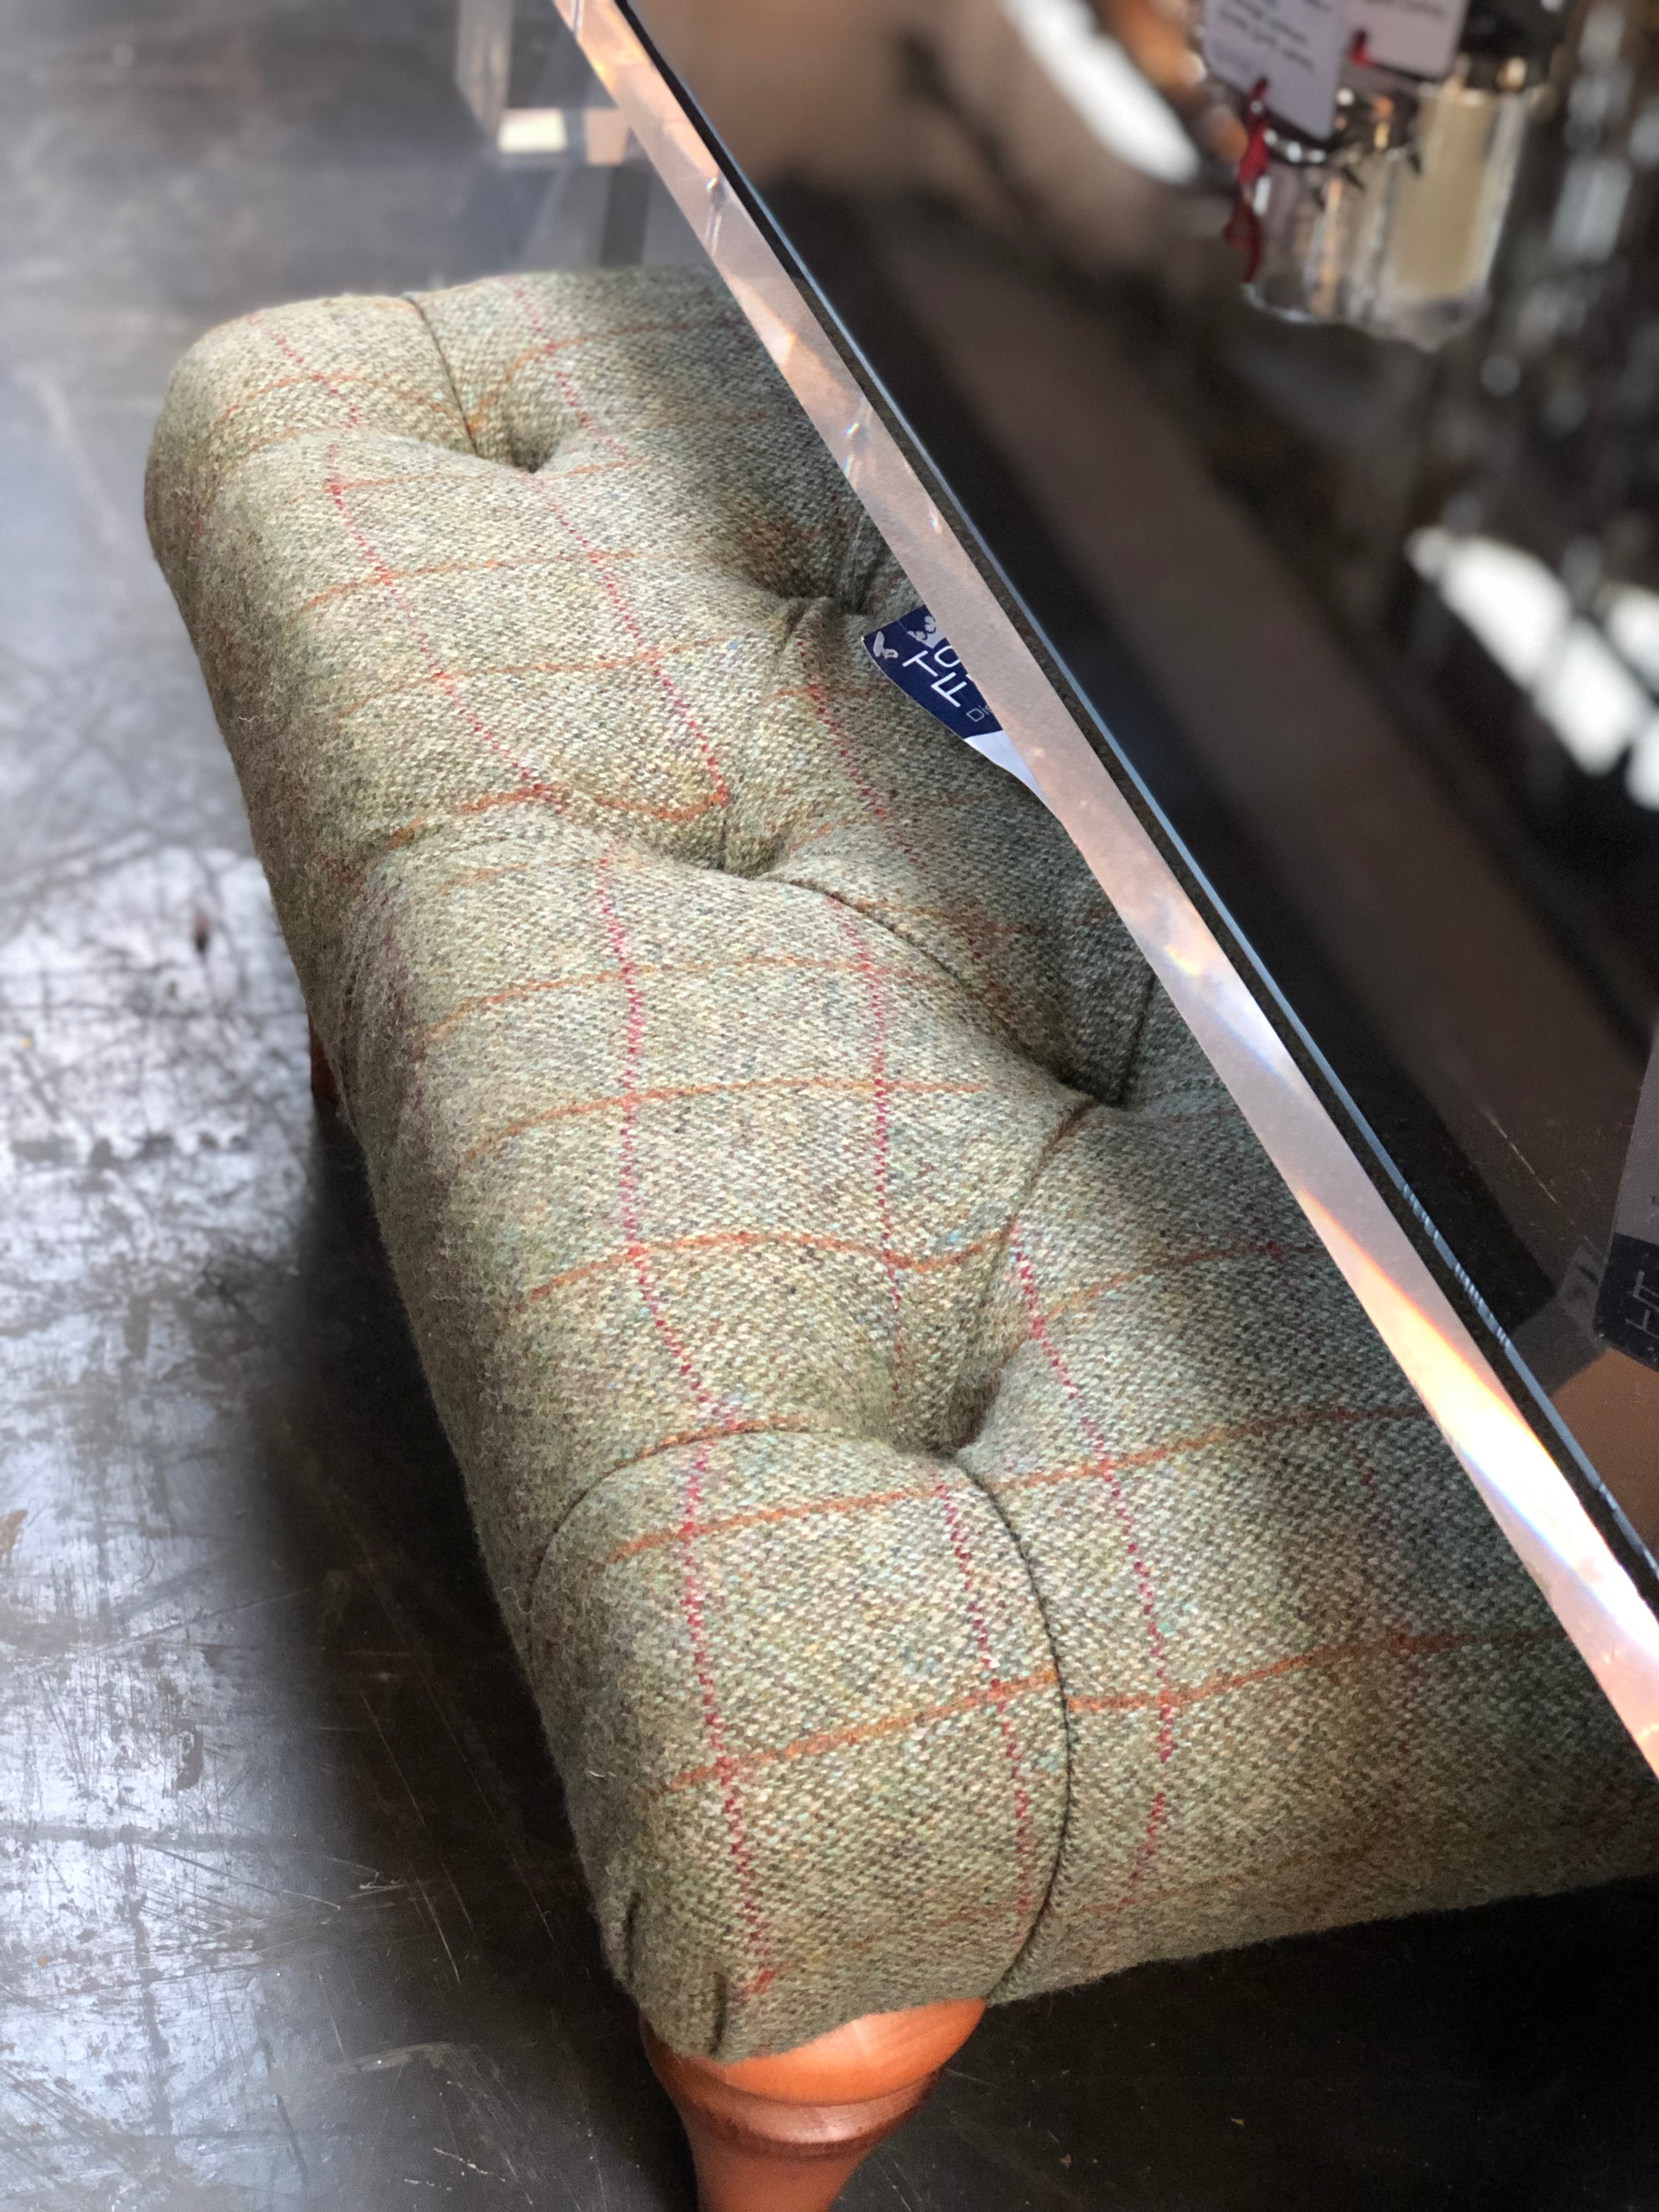 Stirling footstool in Moorland Tweed and Hunting Tweed